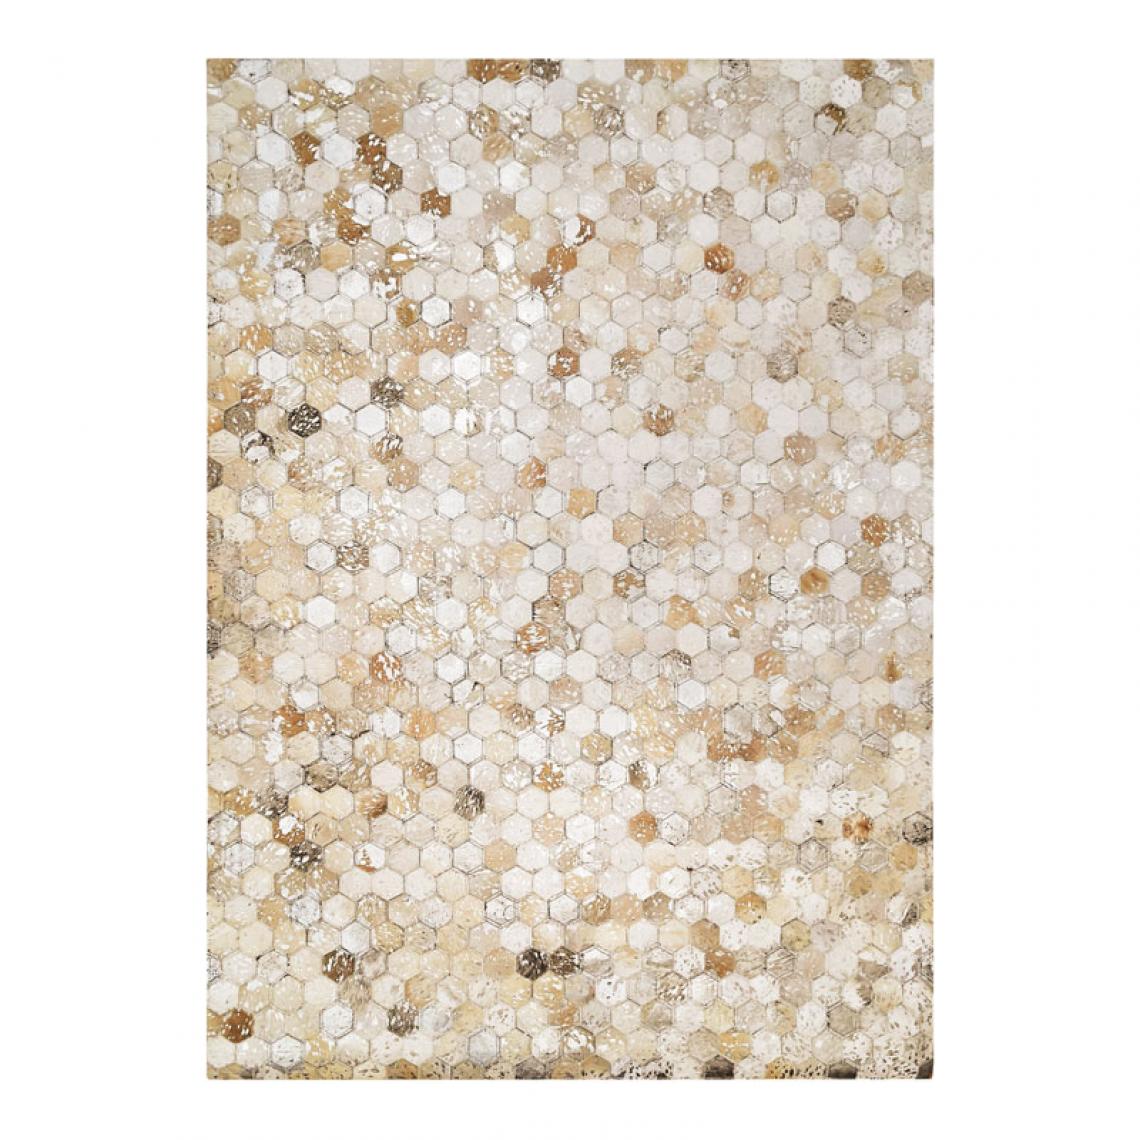 Thedecofactory - CUIR DIAMOND SILVER - Tapis patchwork de cuirs motifs hexagone argent 160x230 - Tapis